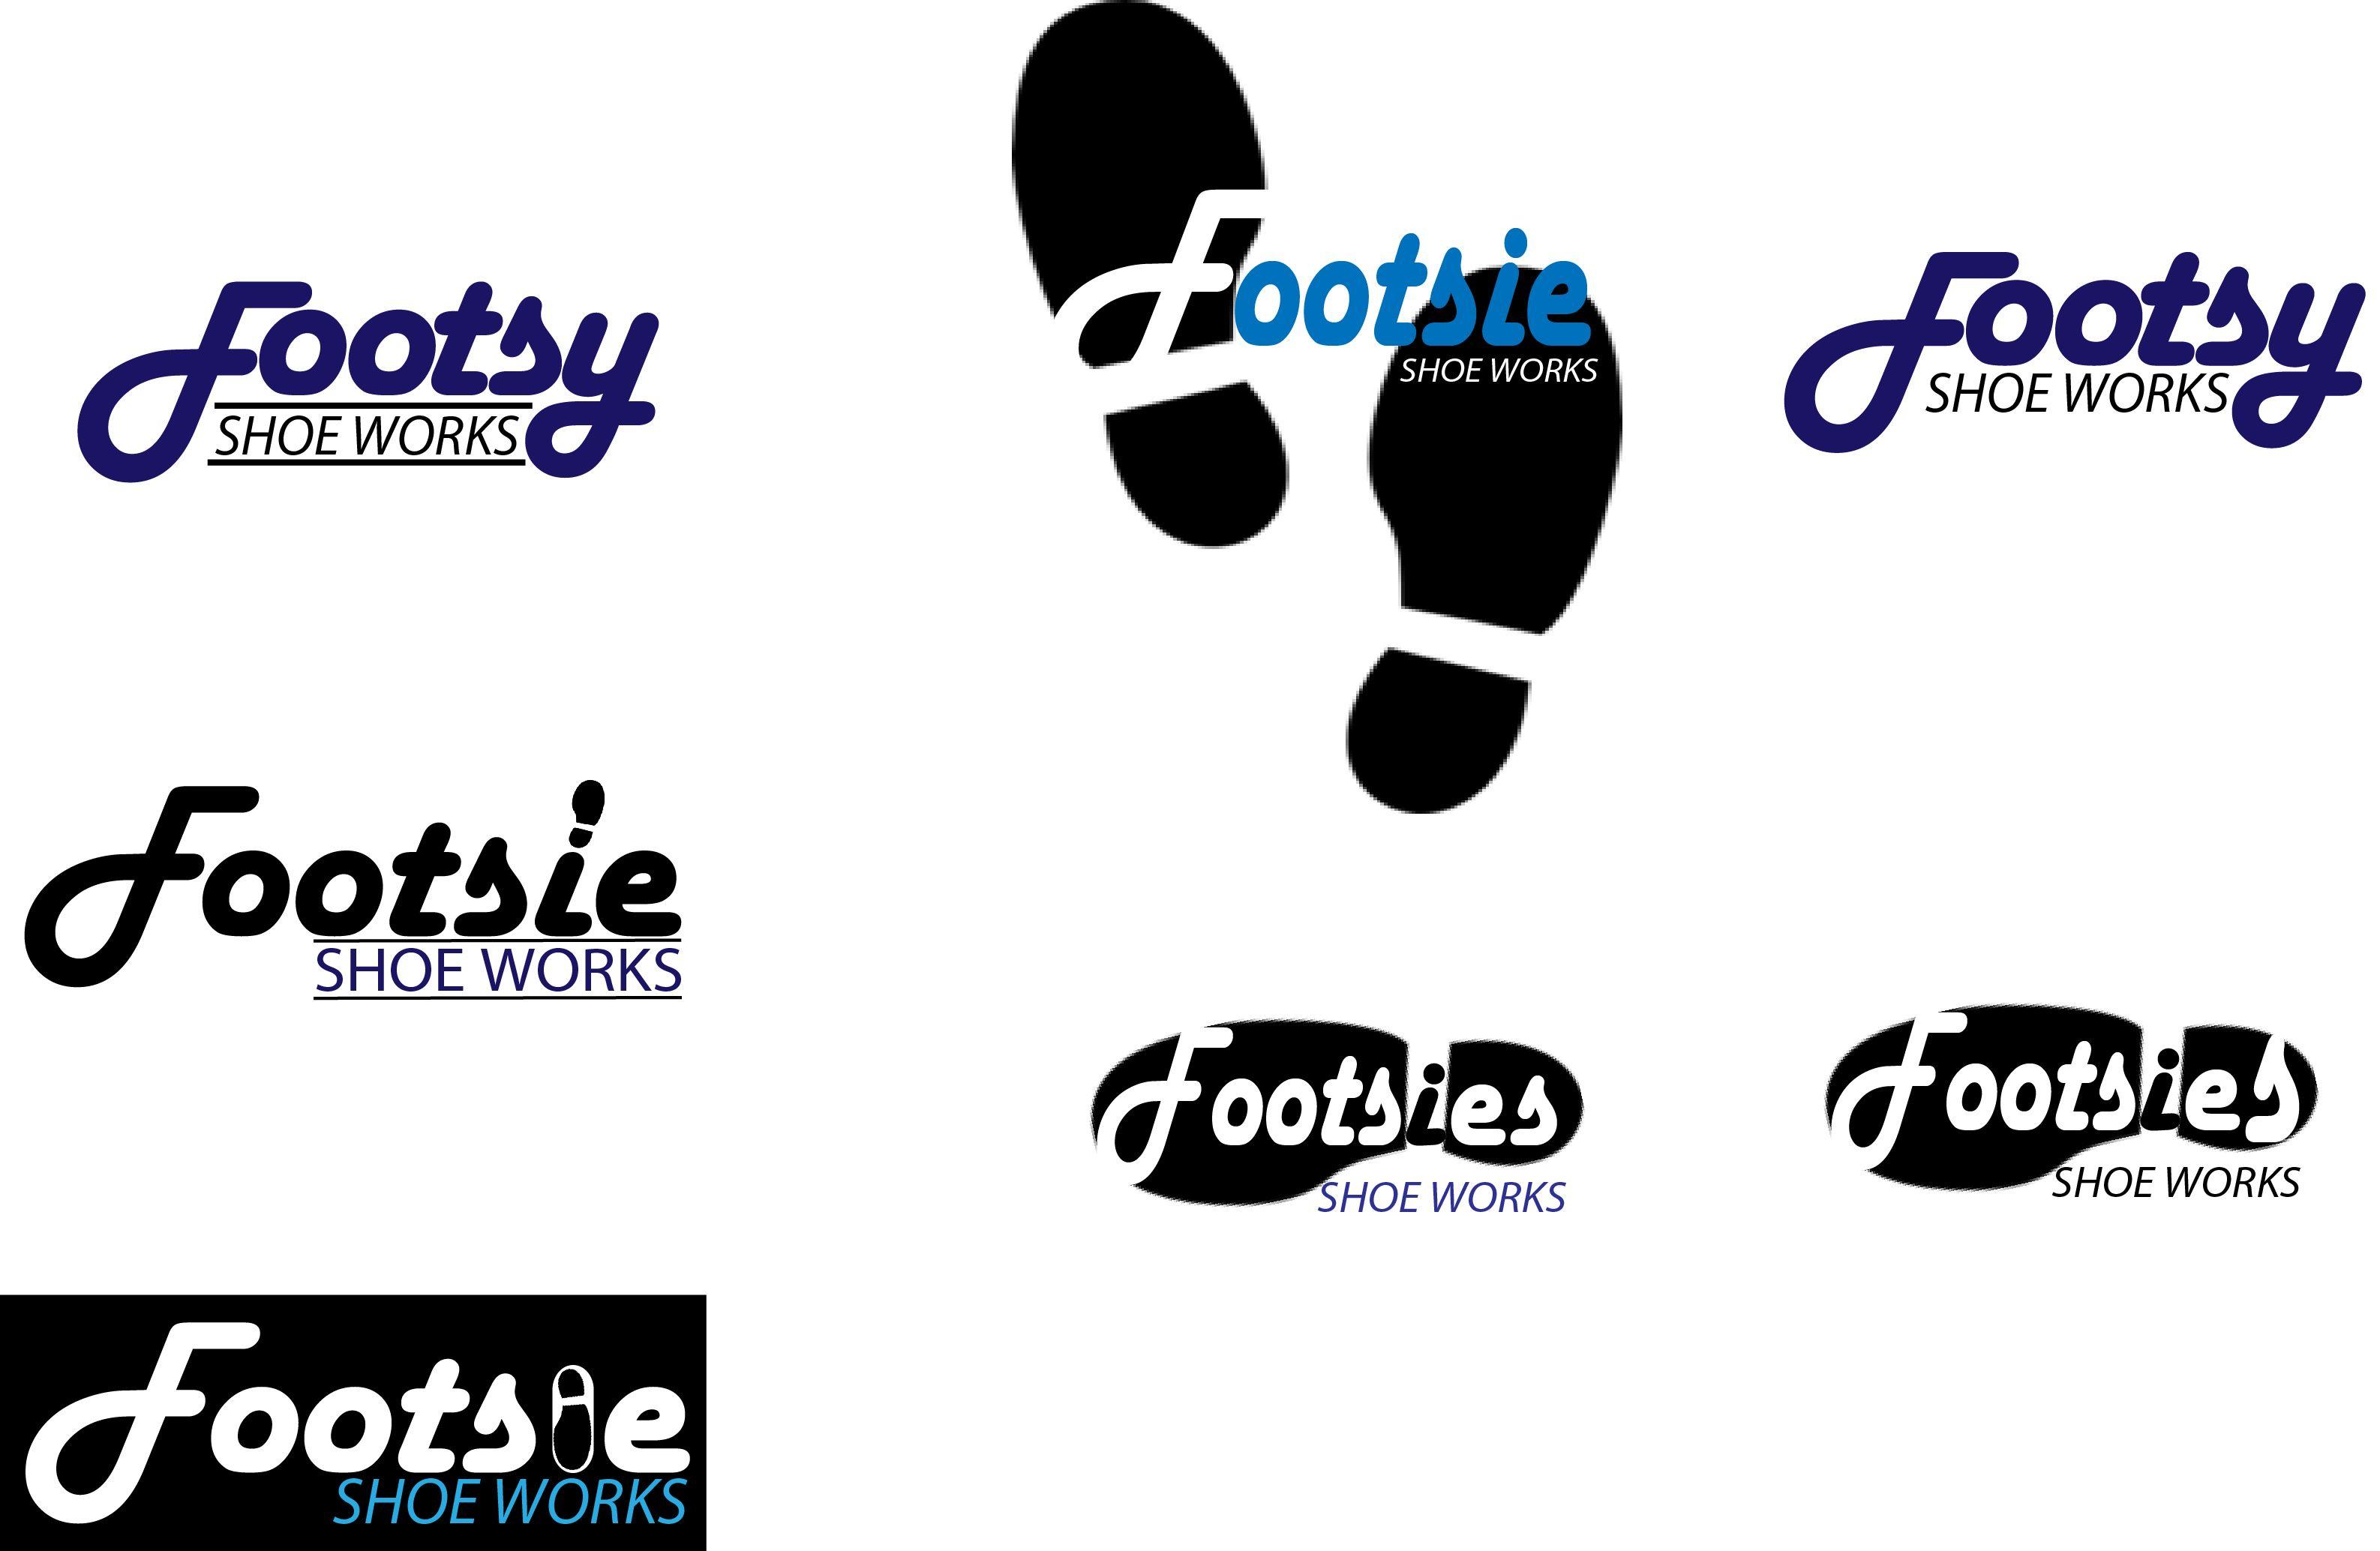 American Shoe Company Logo - Footsie Shoe logos